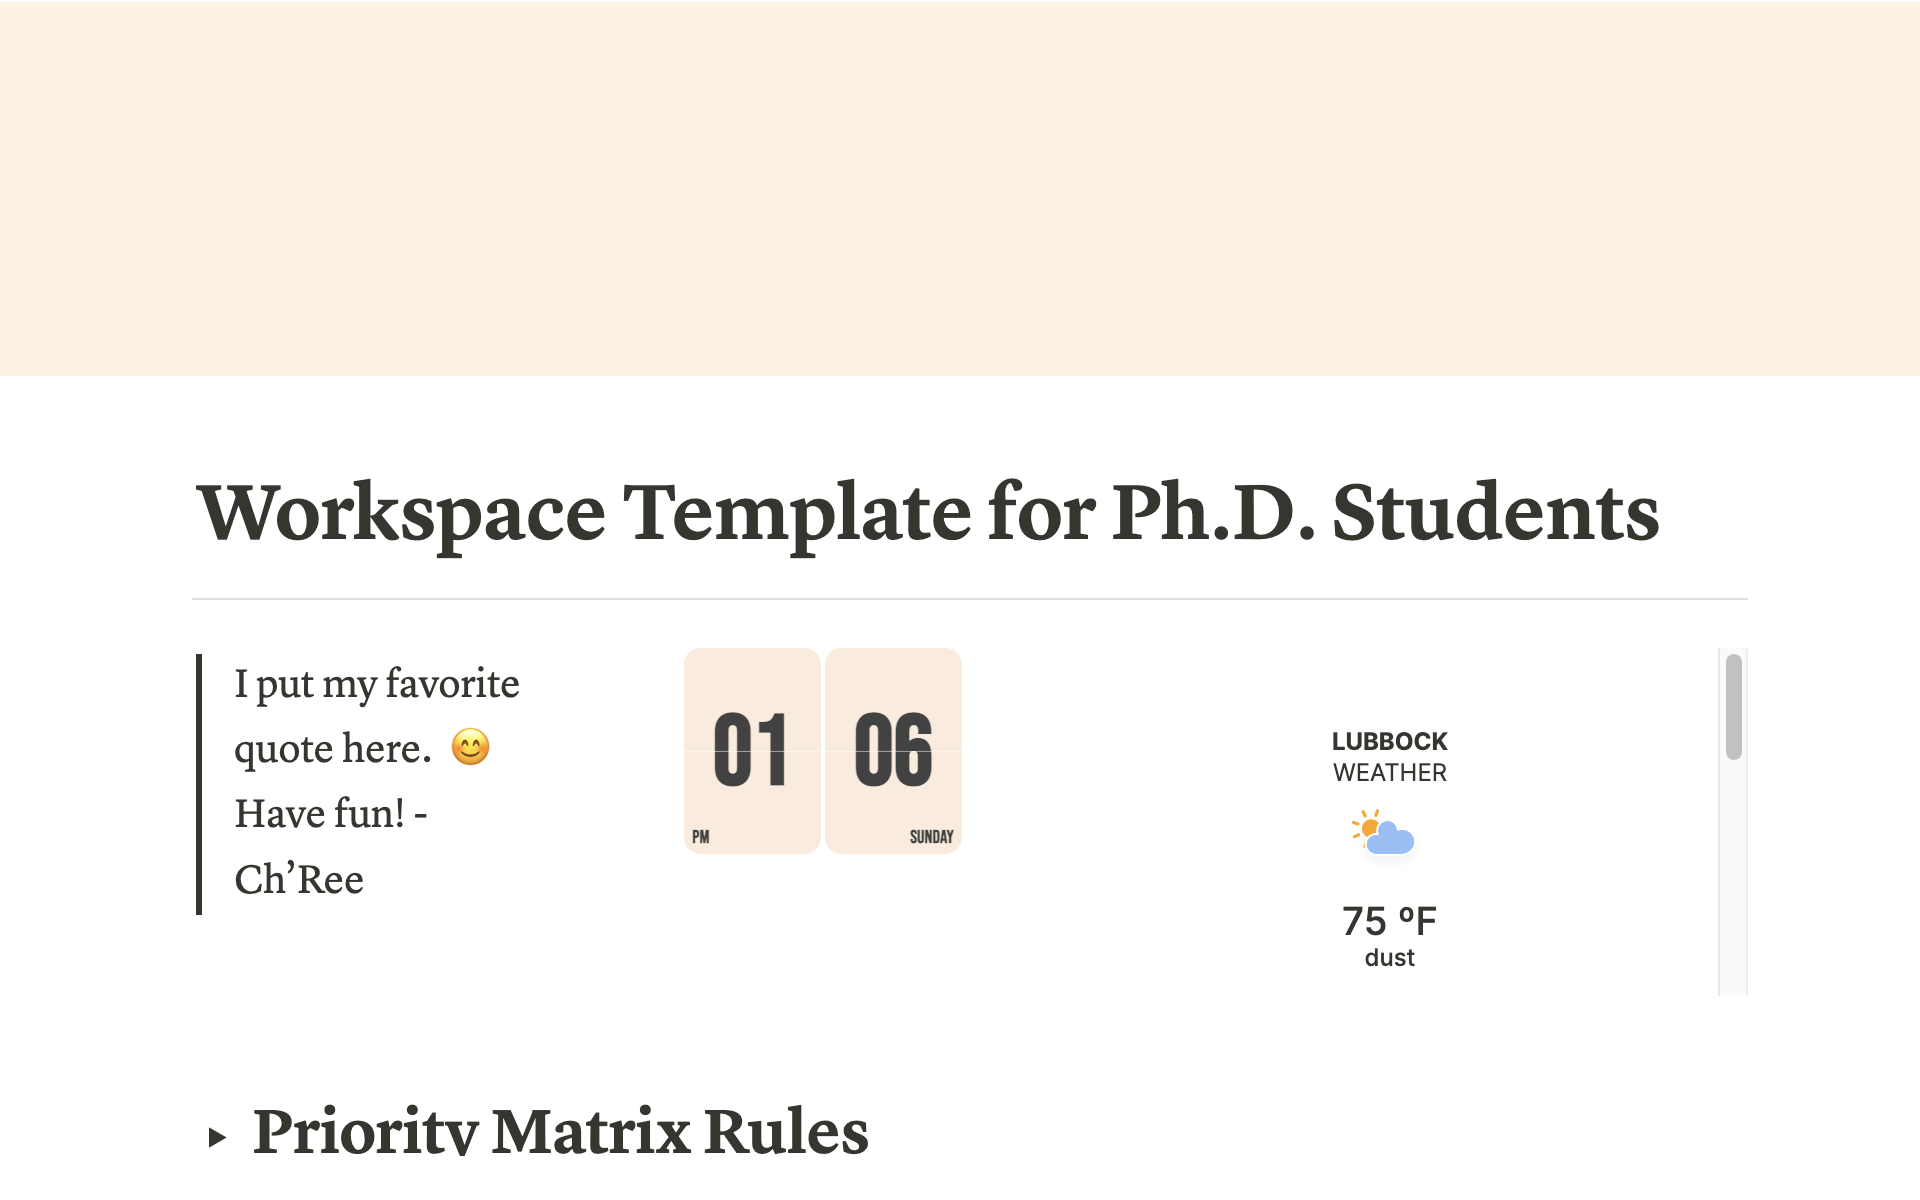 Vista previa de una plantilla para Workspace Template for Ph.D. Students